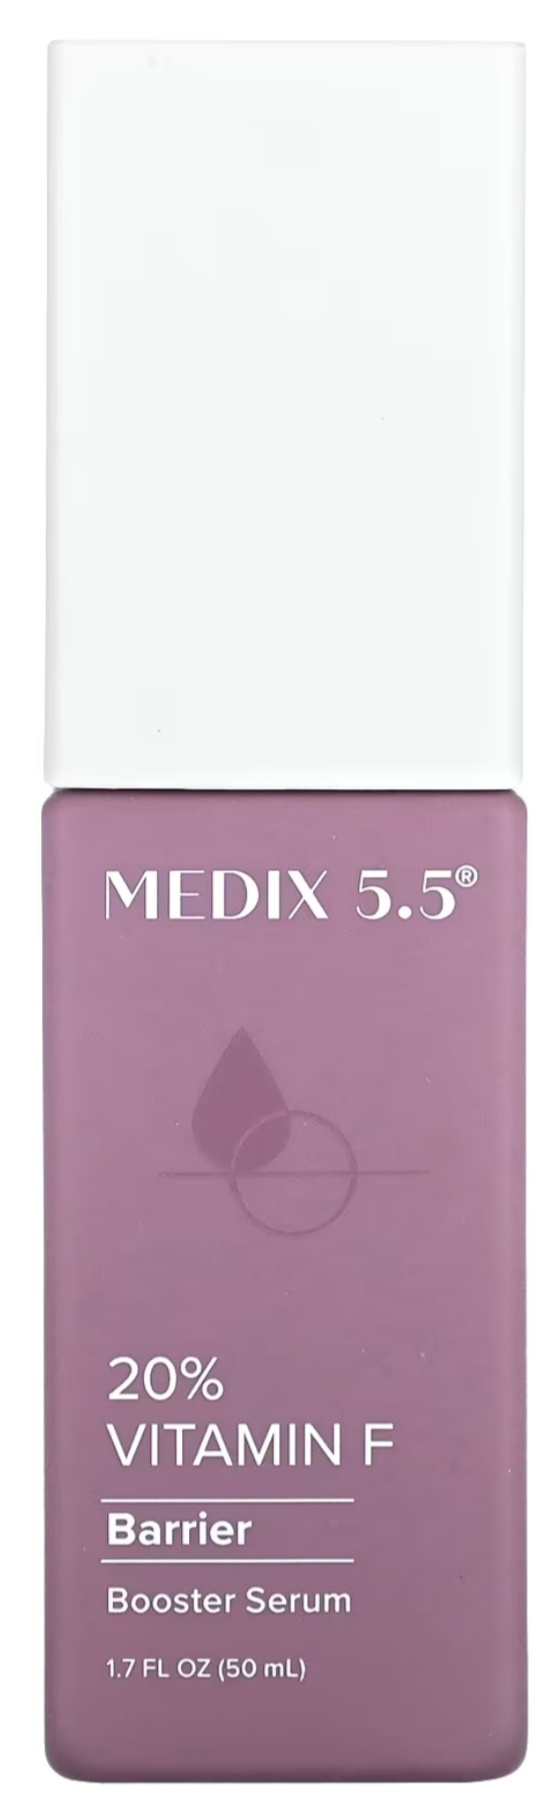 Medix 5.5 Booster Serum 20% Vitamin F